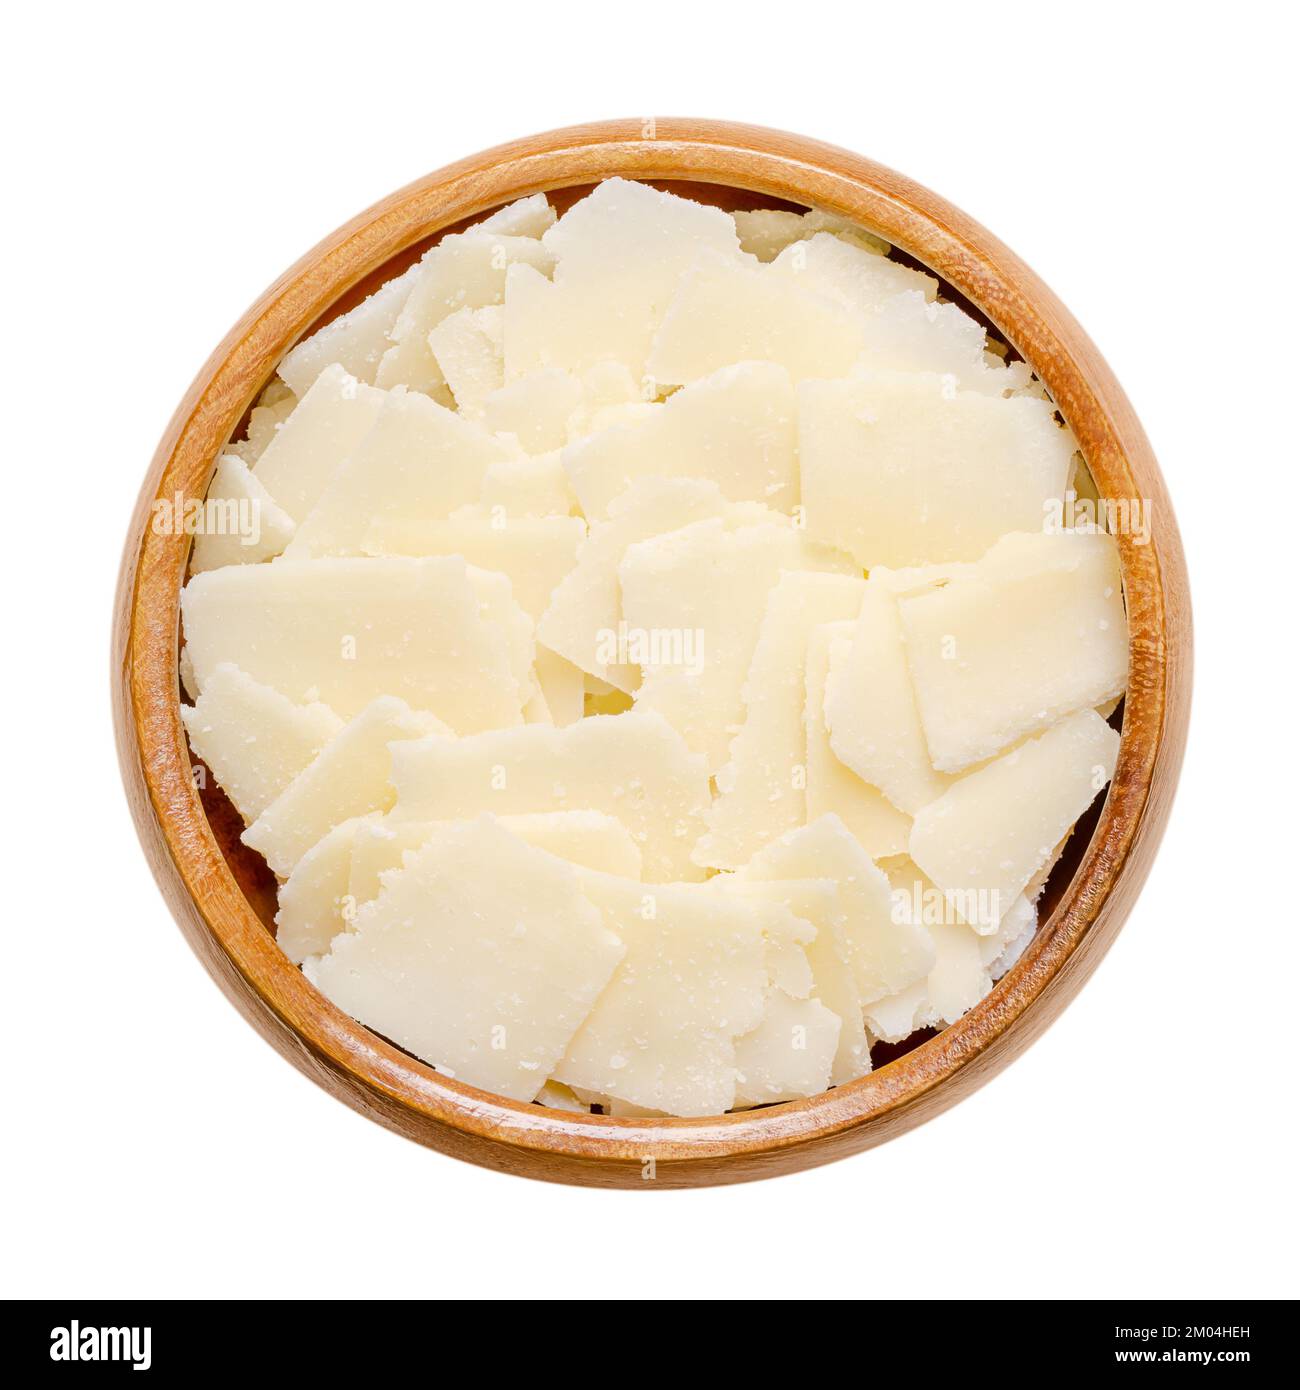 Il Grana Padano si sfalda in una ciotola di legno. Formaggio italiano duro, simile al parmigiano, dalla consistenza friabile, dal sapore salato forte e dalla consistenza grattugiosa. Foto Stock